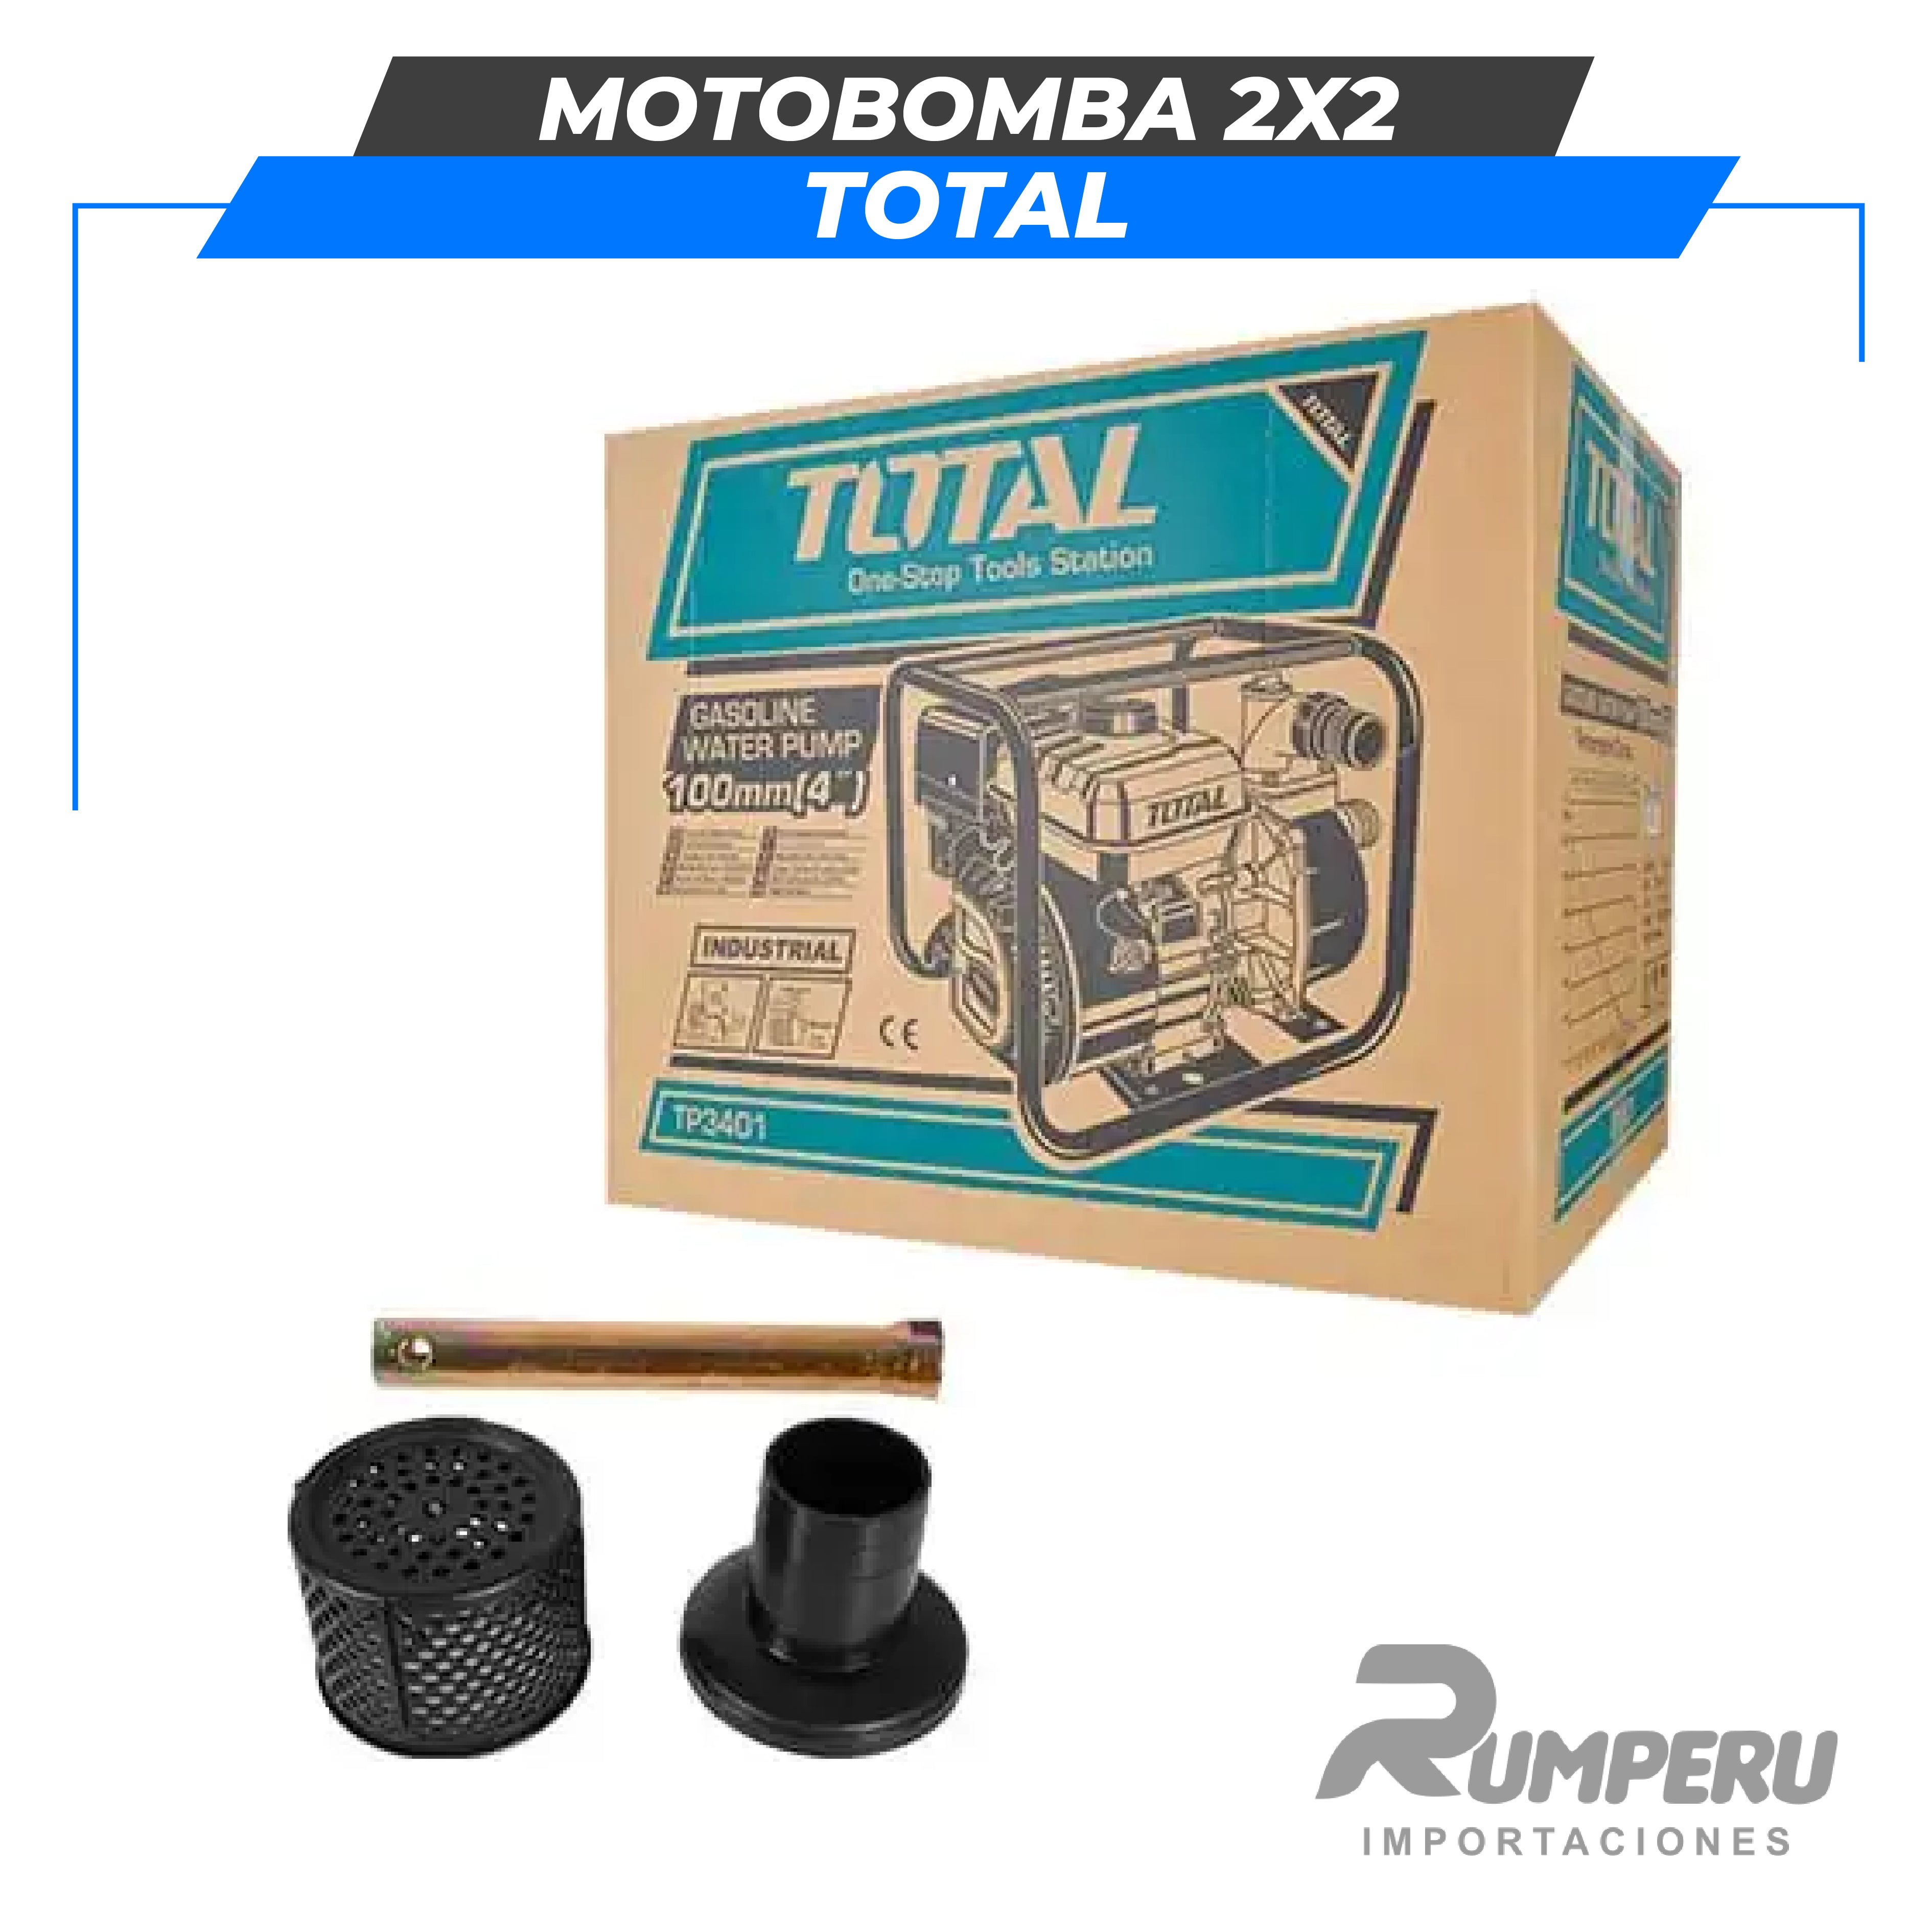 Motobomba 2x2" TOTAL